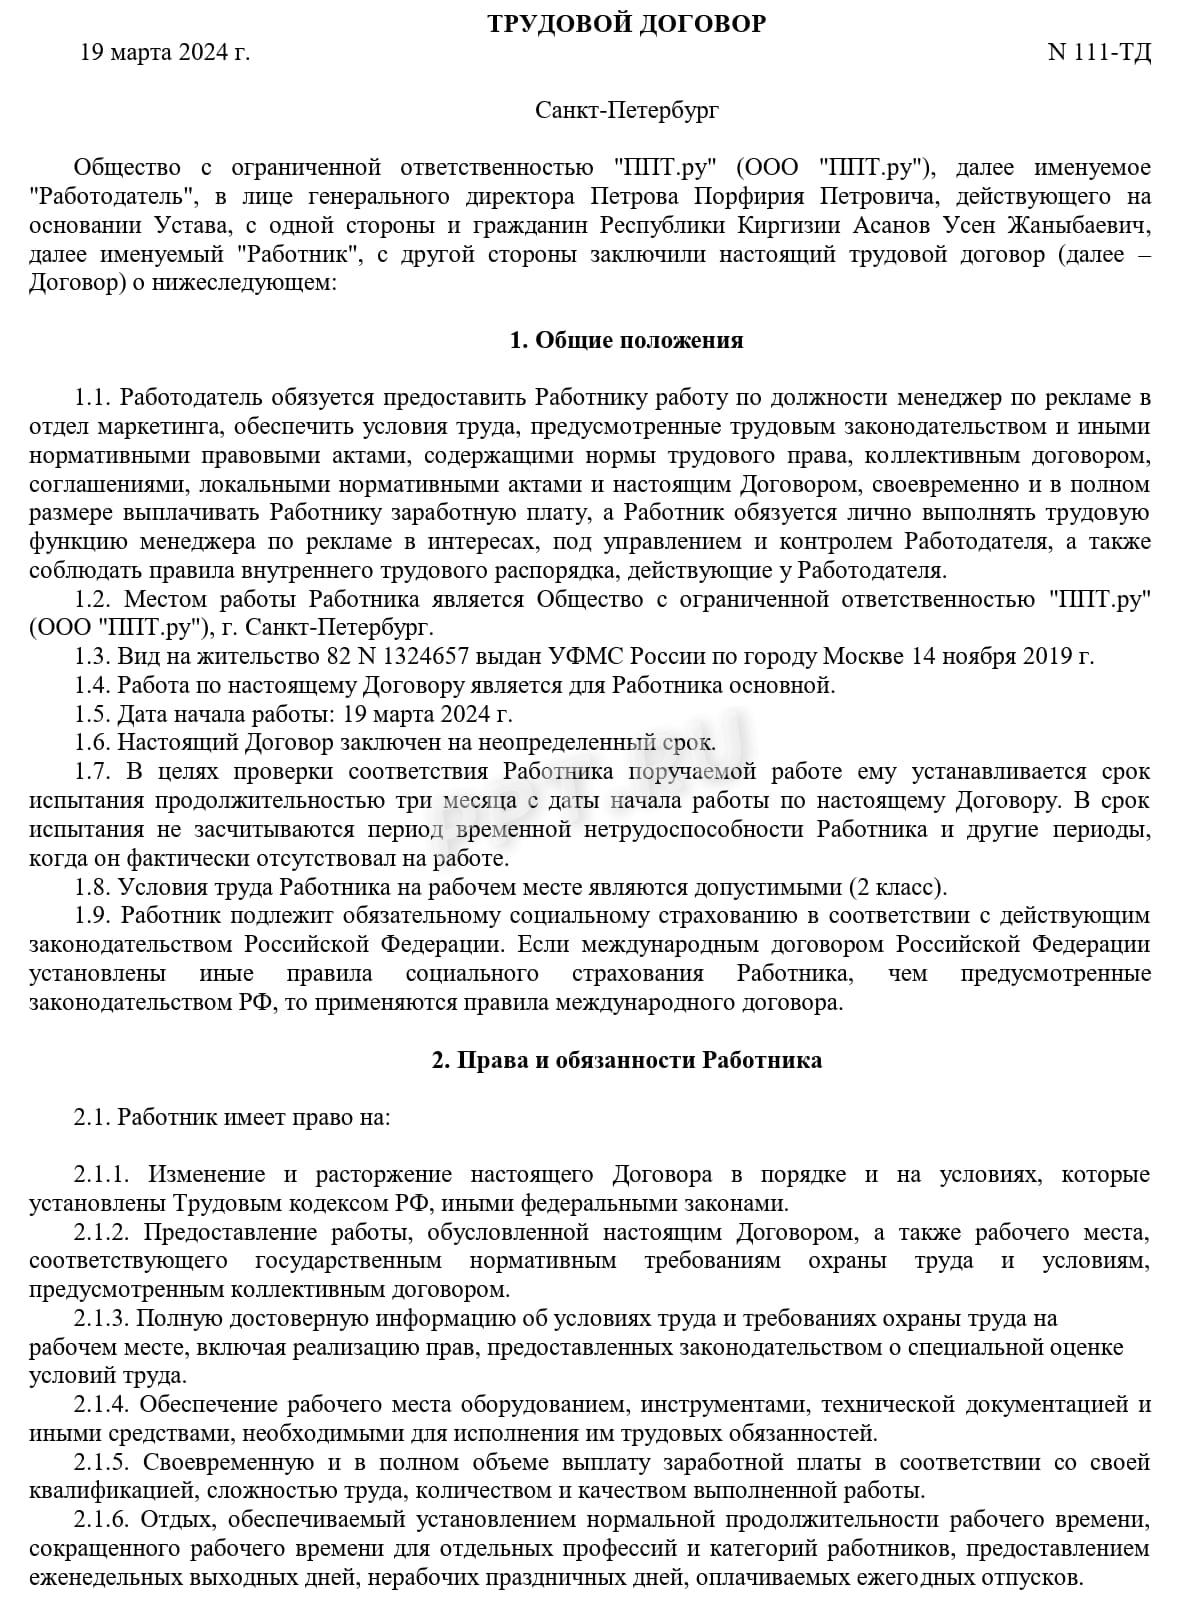 Образец трудового договора с киргизом, стр. 1